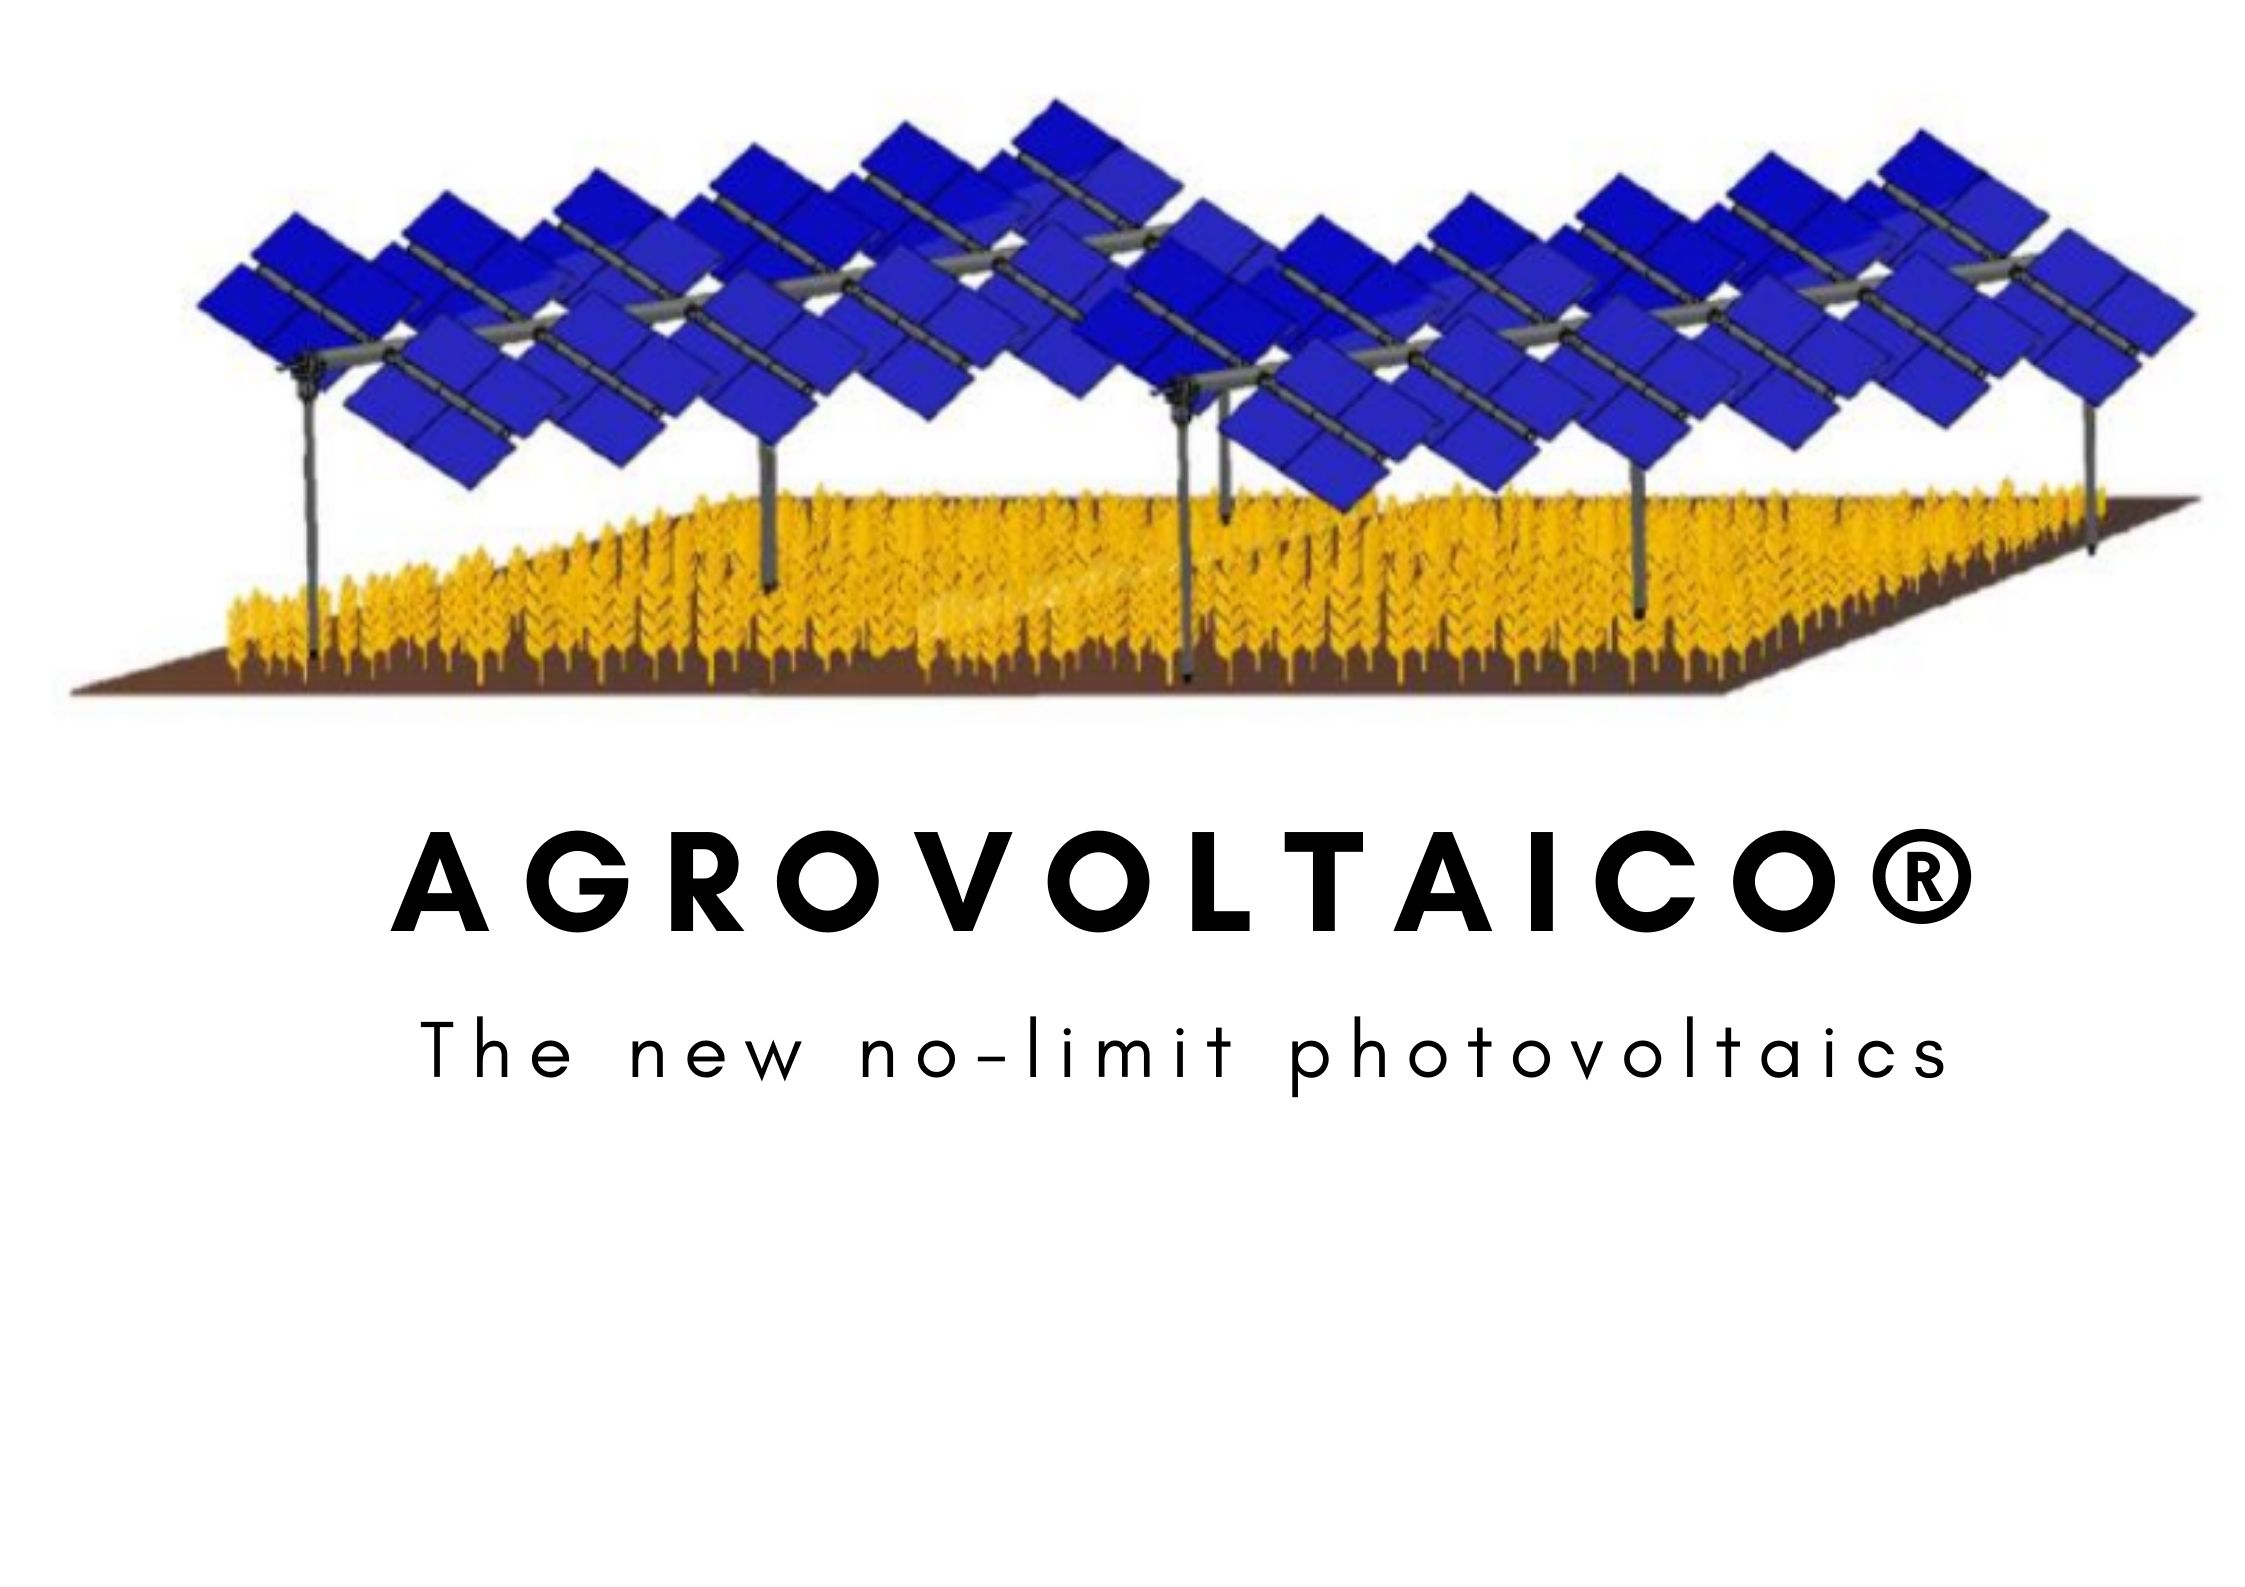 Agrovoltaico®